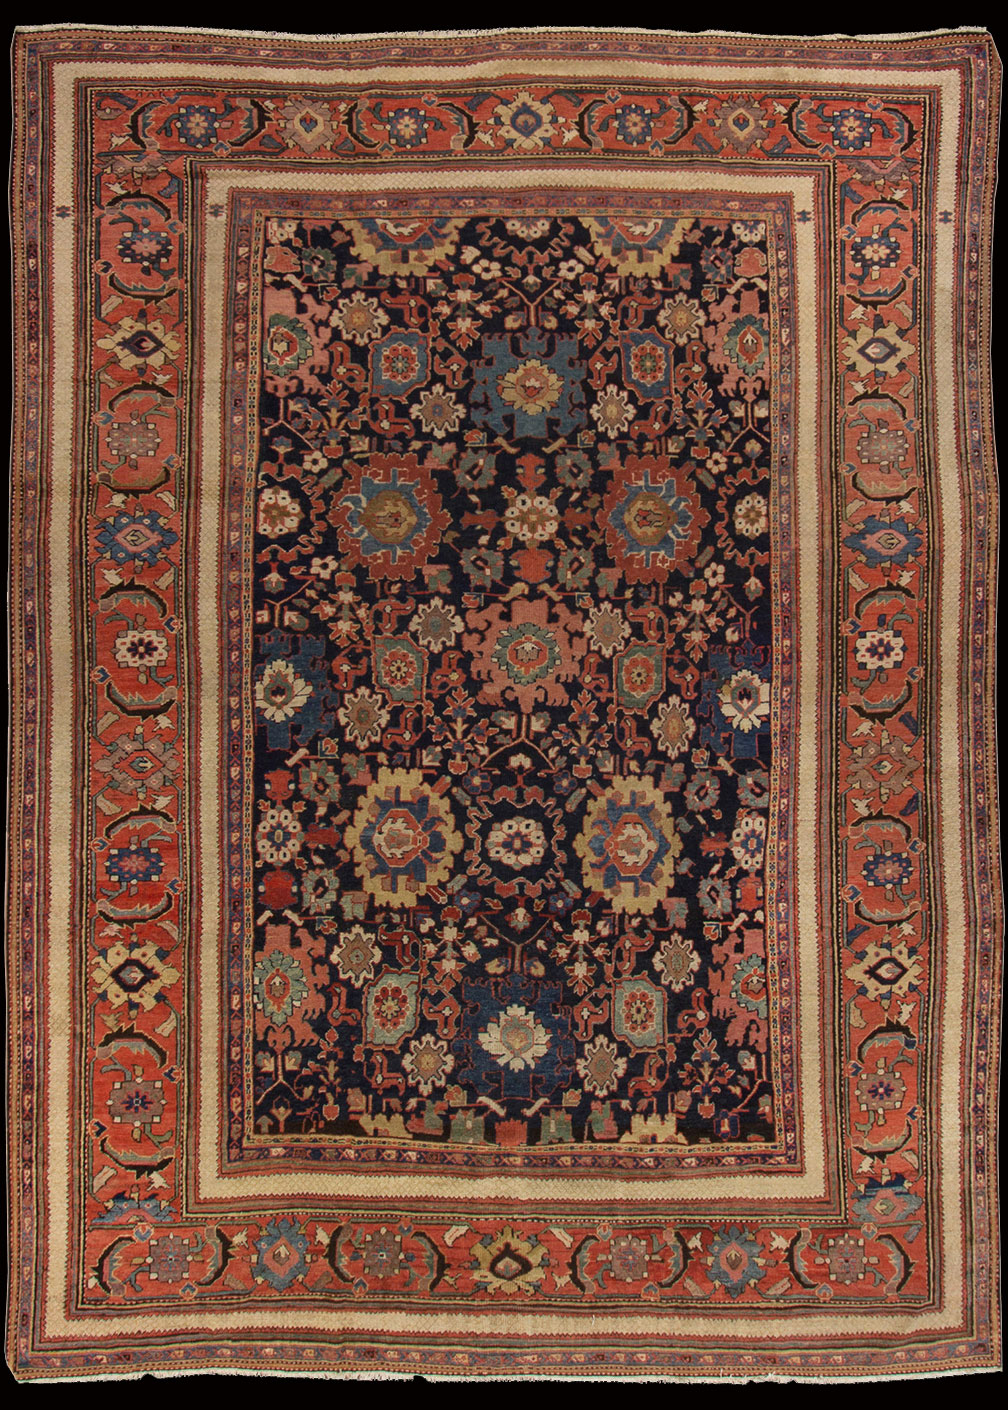 Antique mahal Carpet - # 51463